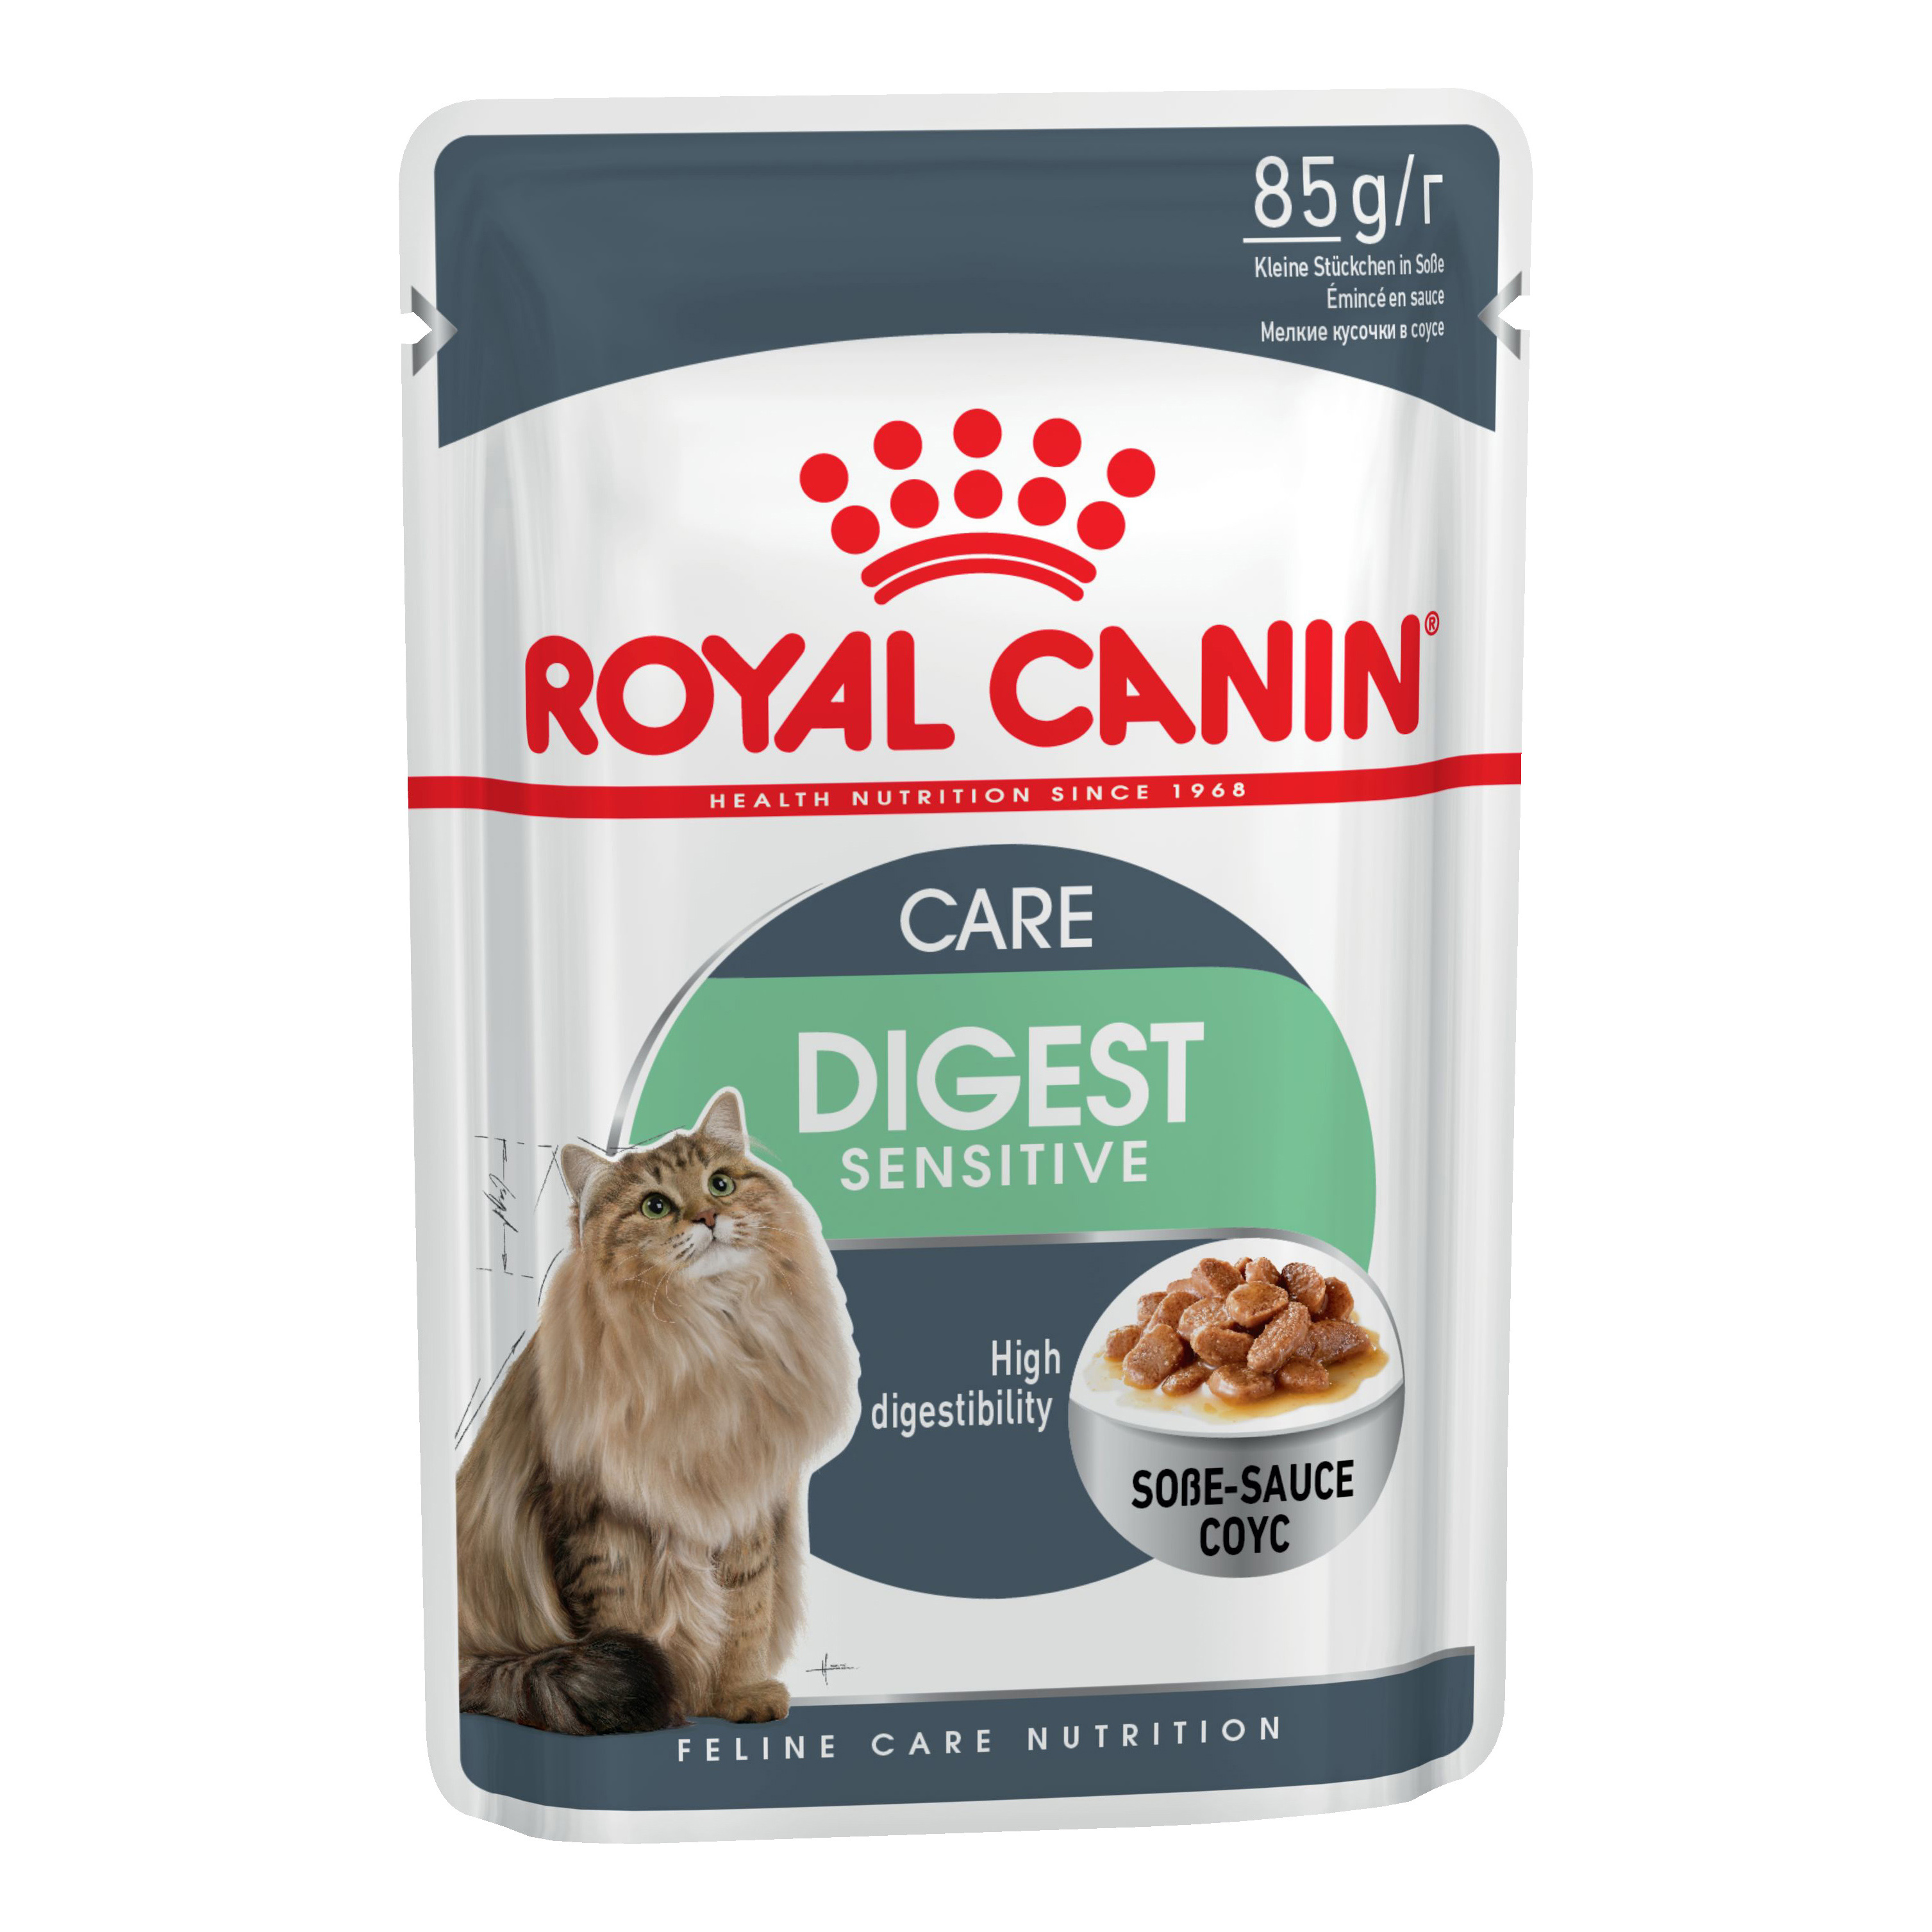 Royal canin для кошек влажный купить. Роял Канин Light Weight кошек. Роял Канин Hairball Care для кошек. Пуринаоия Роял Конин паучер. Паучи Роял Канин для кошек.